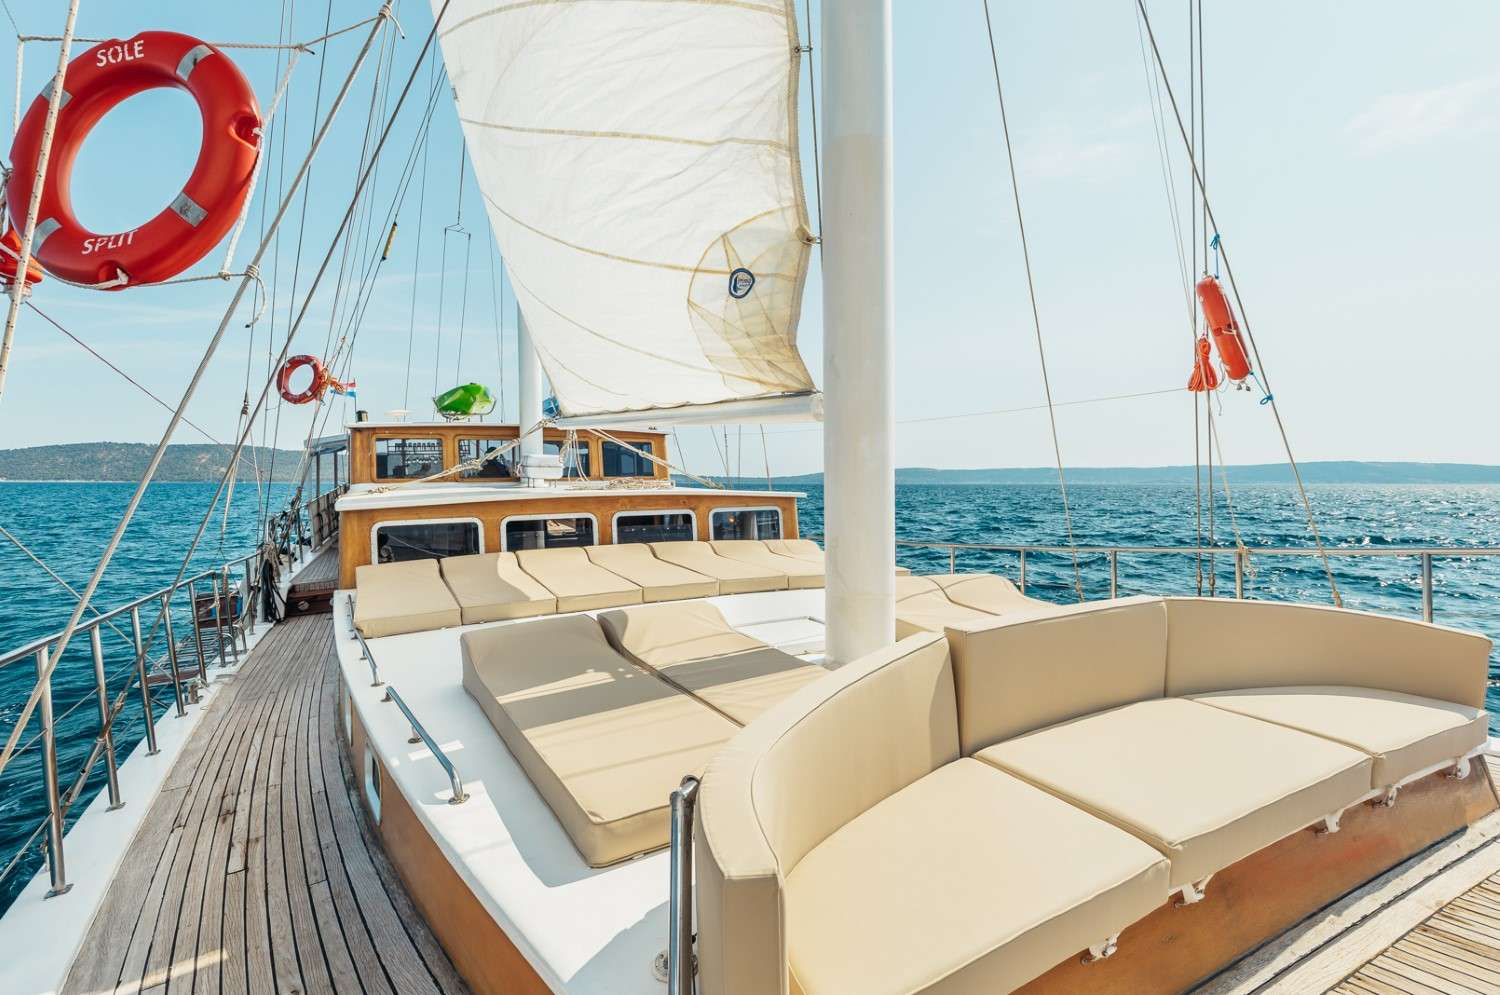 Sole  - Yacht Charter Rijeka & Boat hire in Croatia 5